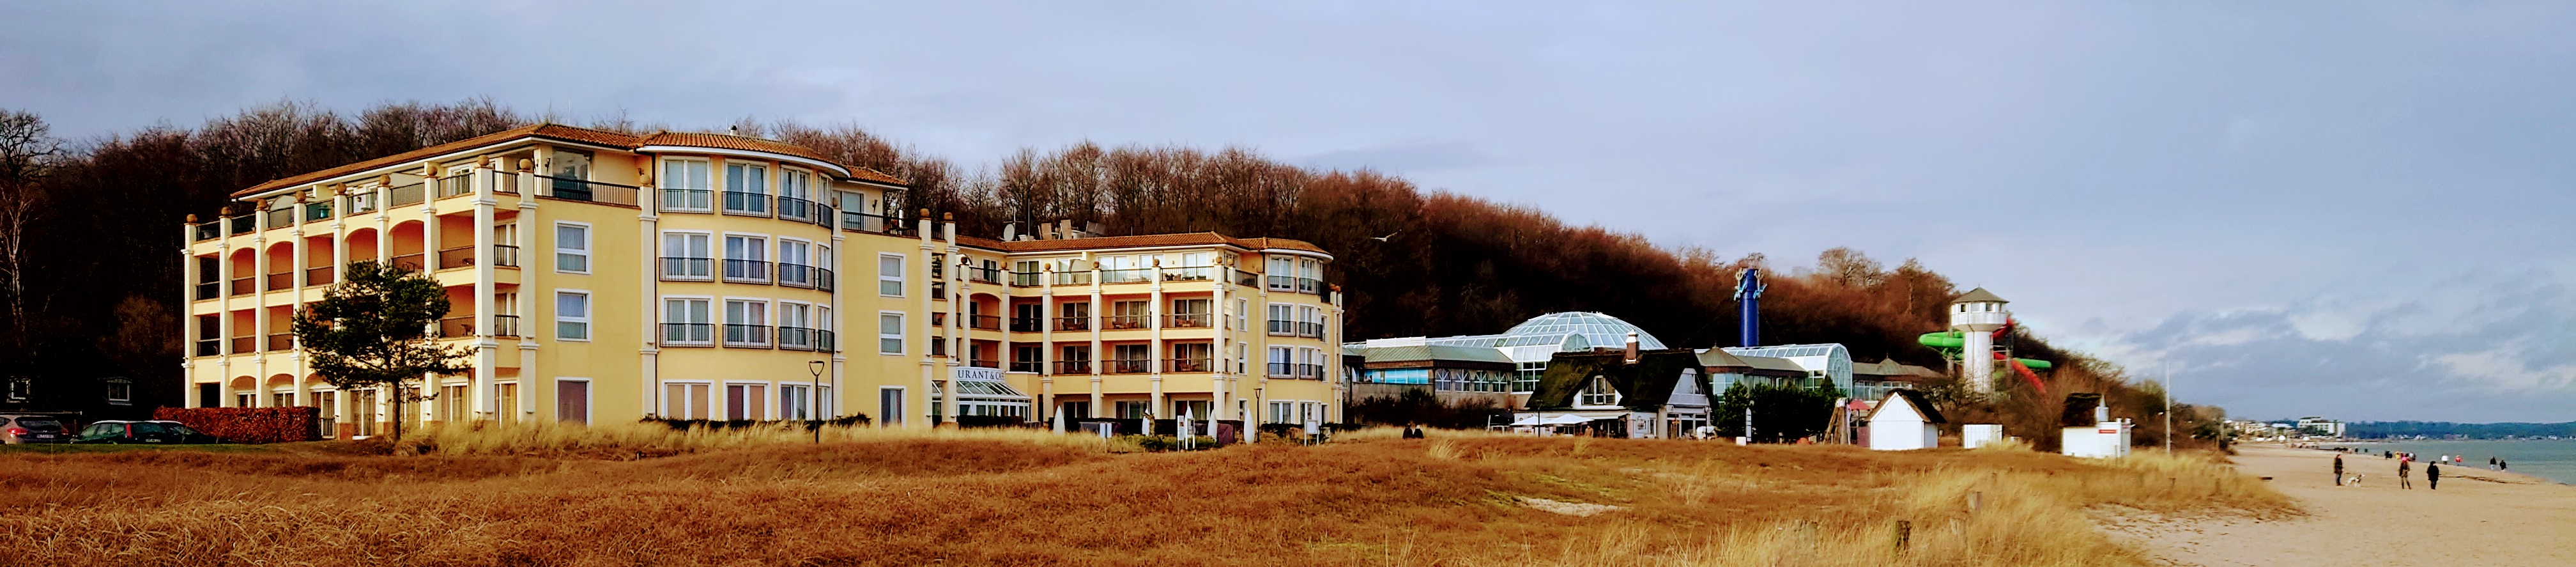 Hotel Belveder i Scharbeutz vid den fina semesterorten Timmendorfer Strand